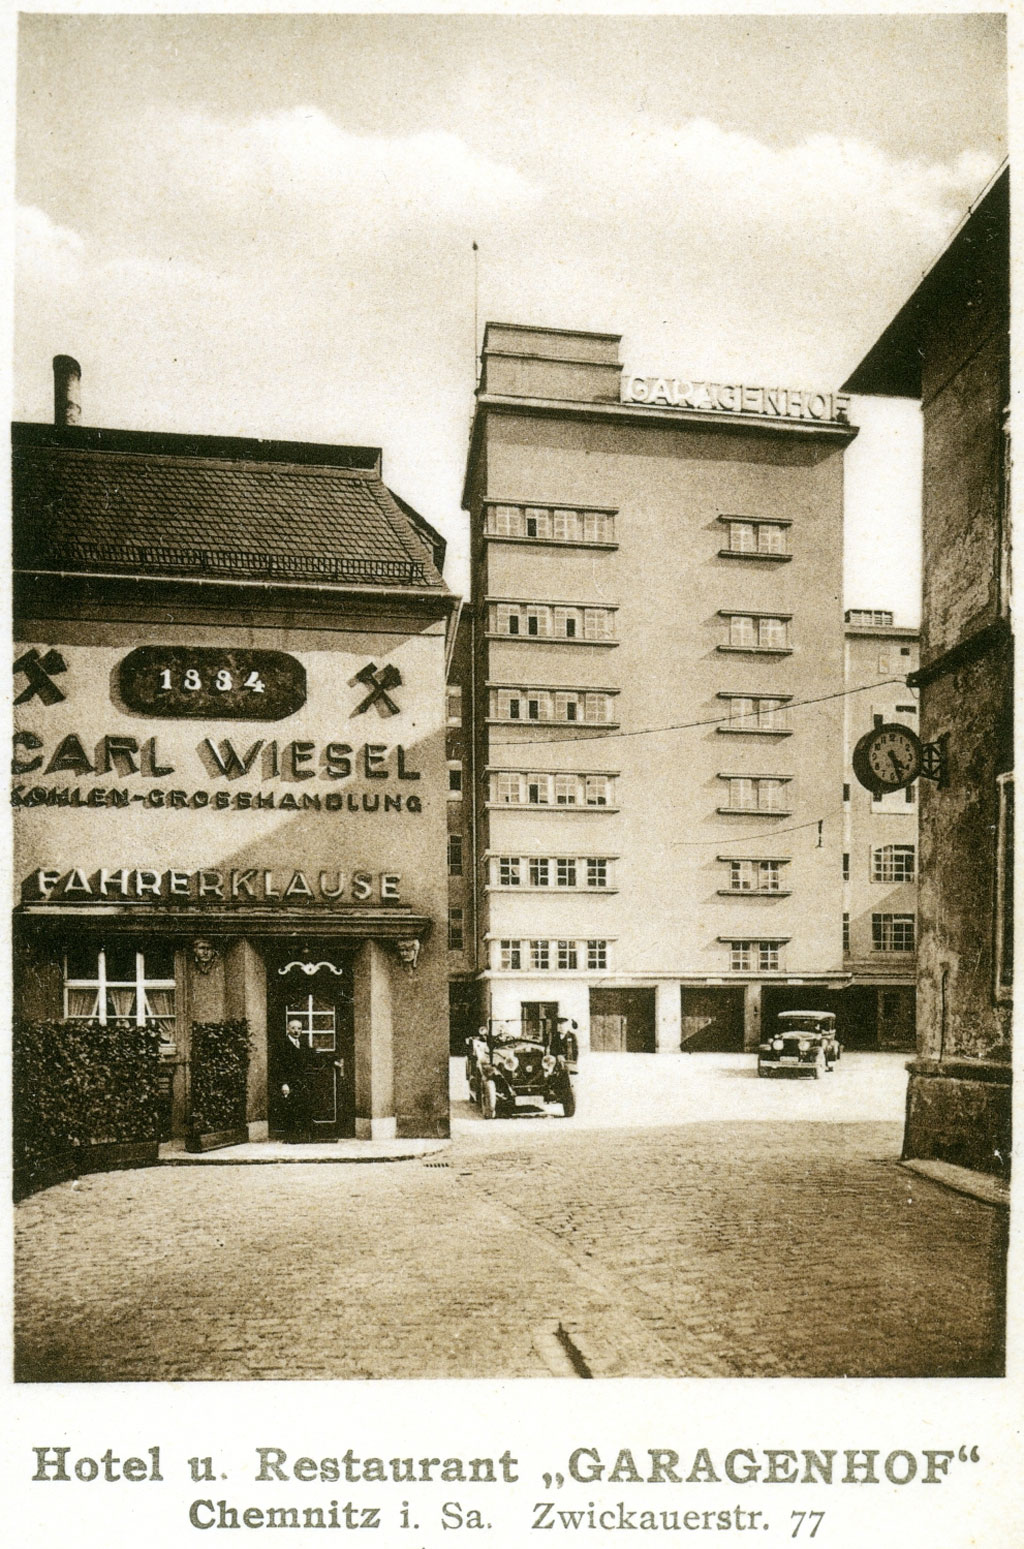 Auf der historischen Postkarte ist die sechsgeschossige Hochgarage Chemnitz zu sehen, davor ein niedrigerer Anbau. Unter dem Foto steht "Hotel und Restaurant 'Garagenhof'. Chemnitz in Sachsen, Zwickauer Straße 77".